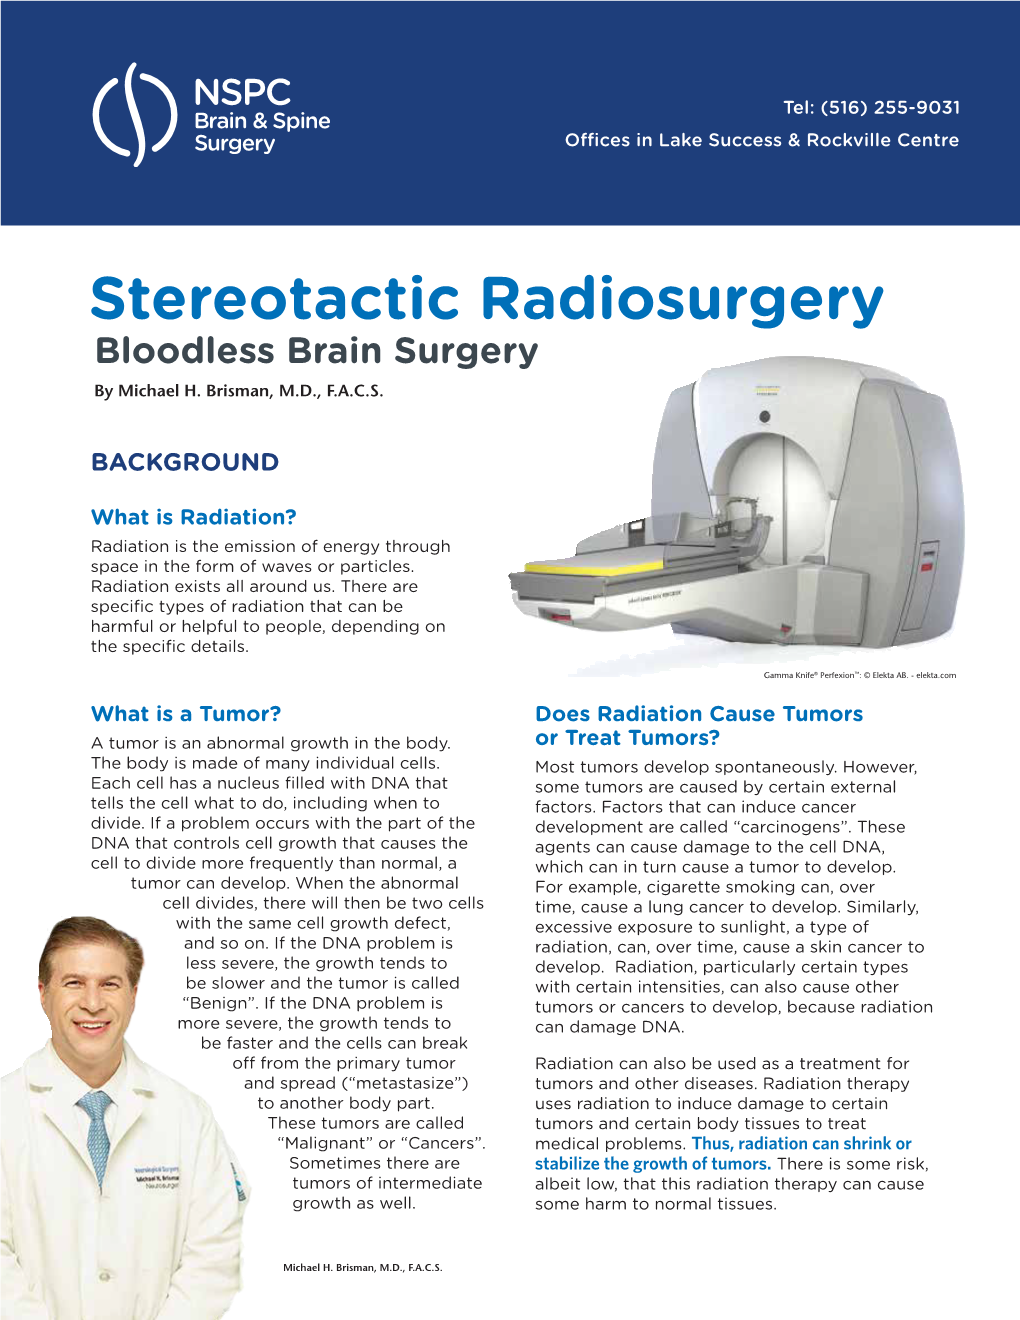 Bloodless Brain Surgery Newsletter